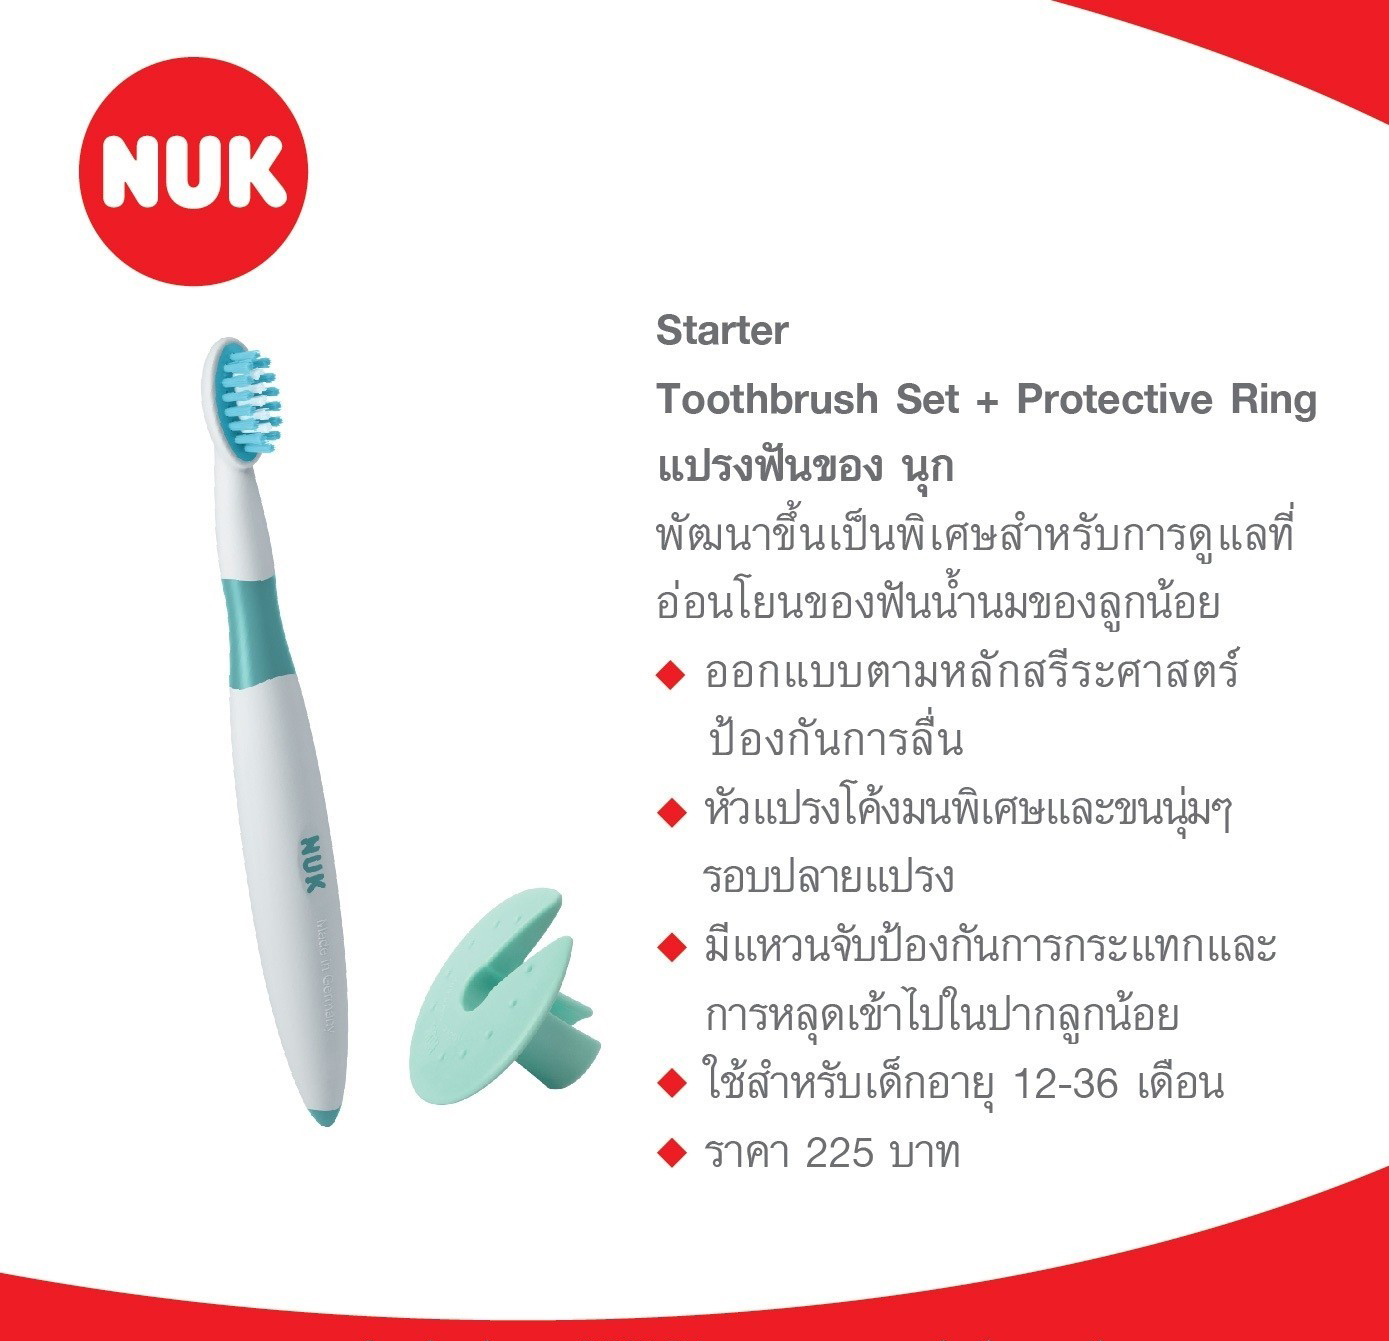 NUK:Starter Toothbrush Set + Protective Ring 